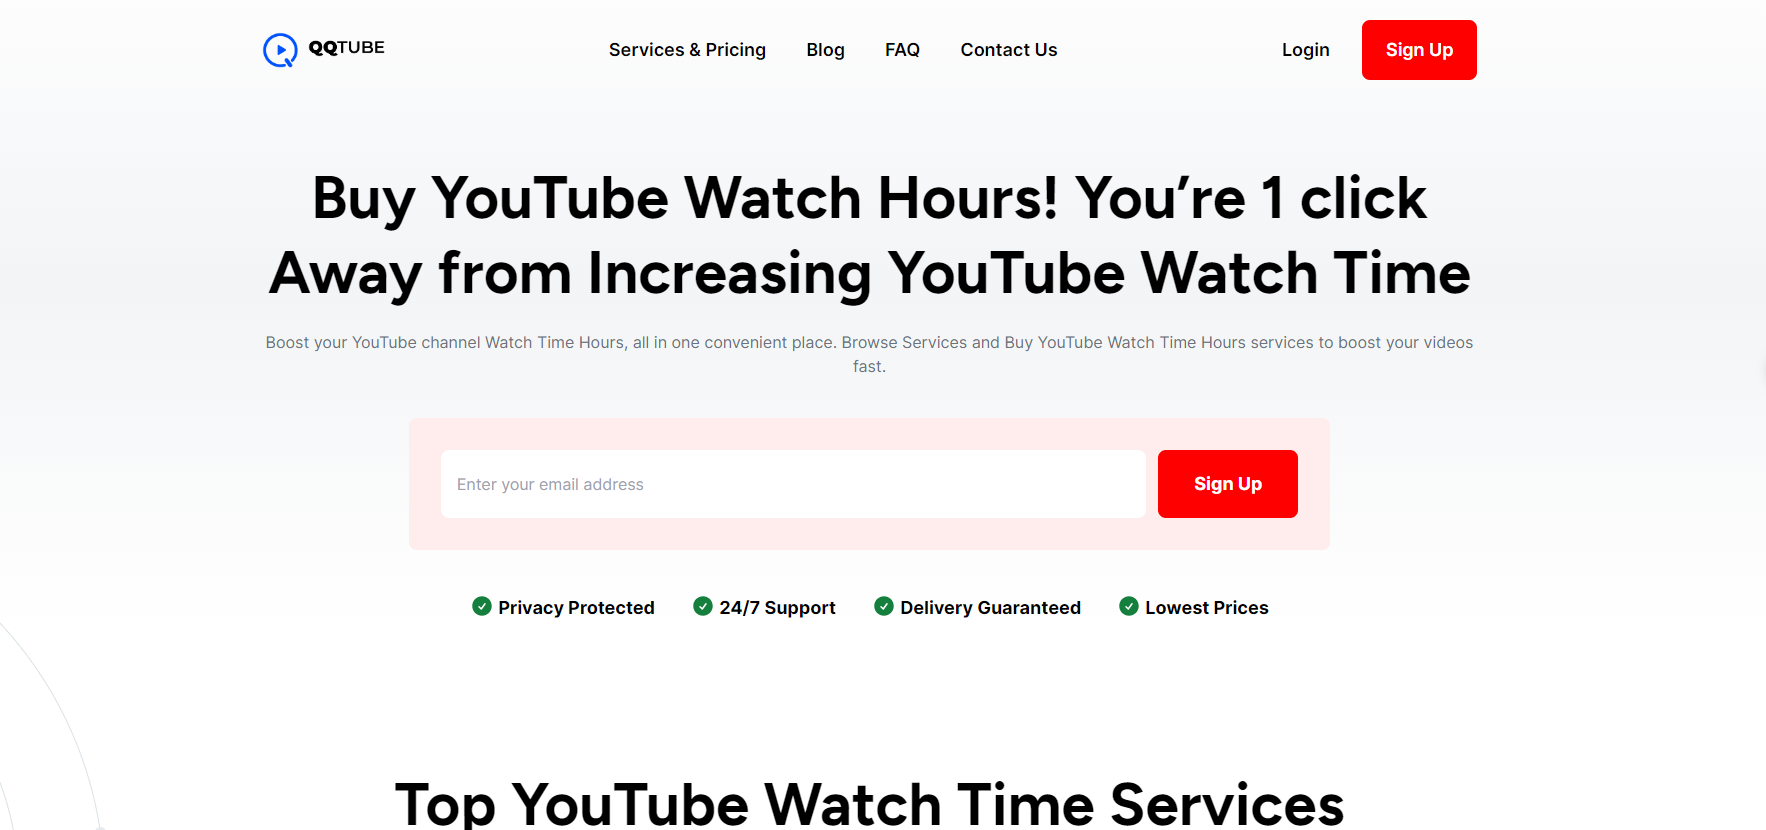 αγοράστε φθηνά 4000 ώρες παρακολούθησης στο youtube